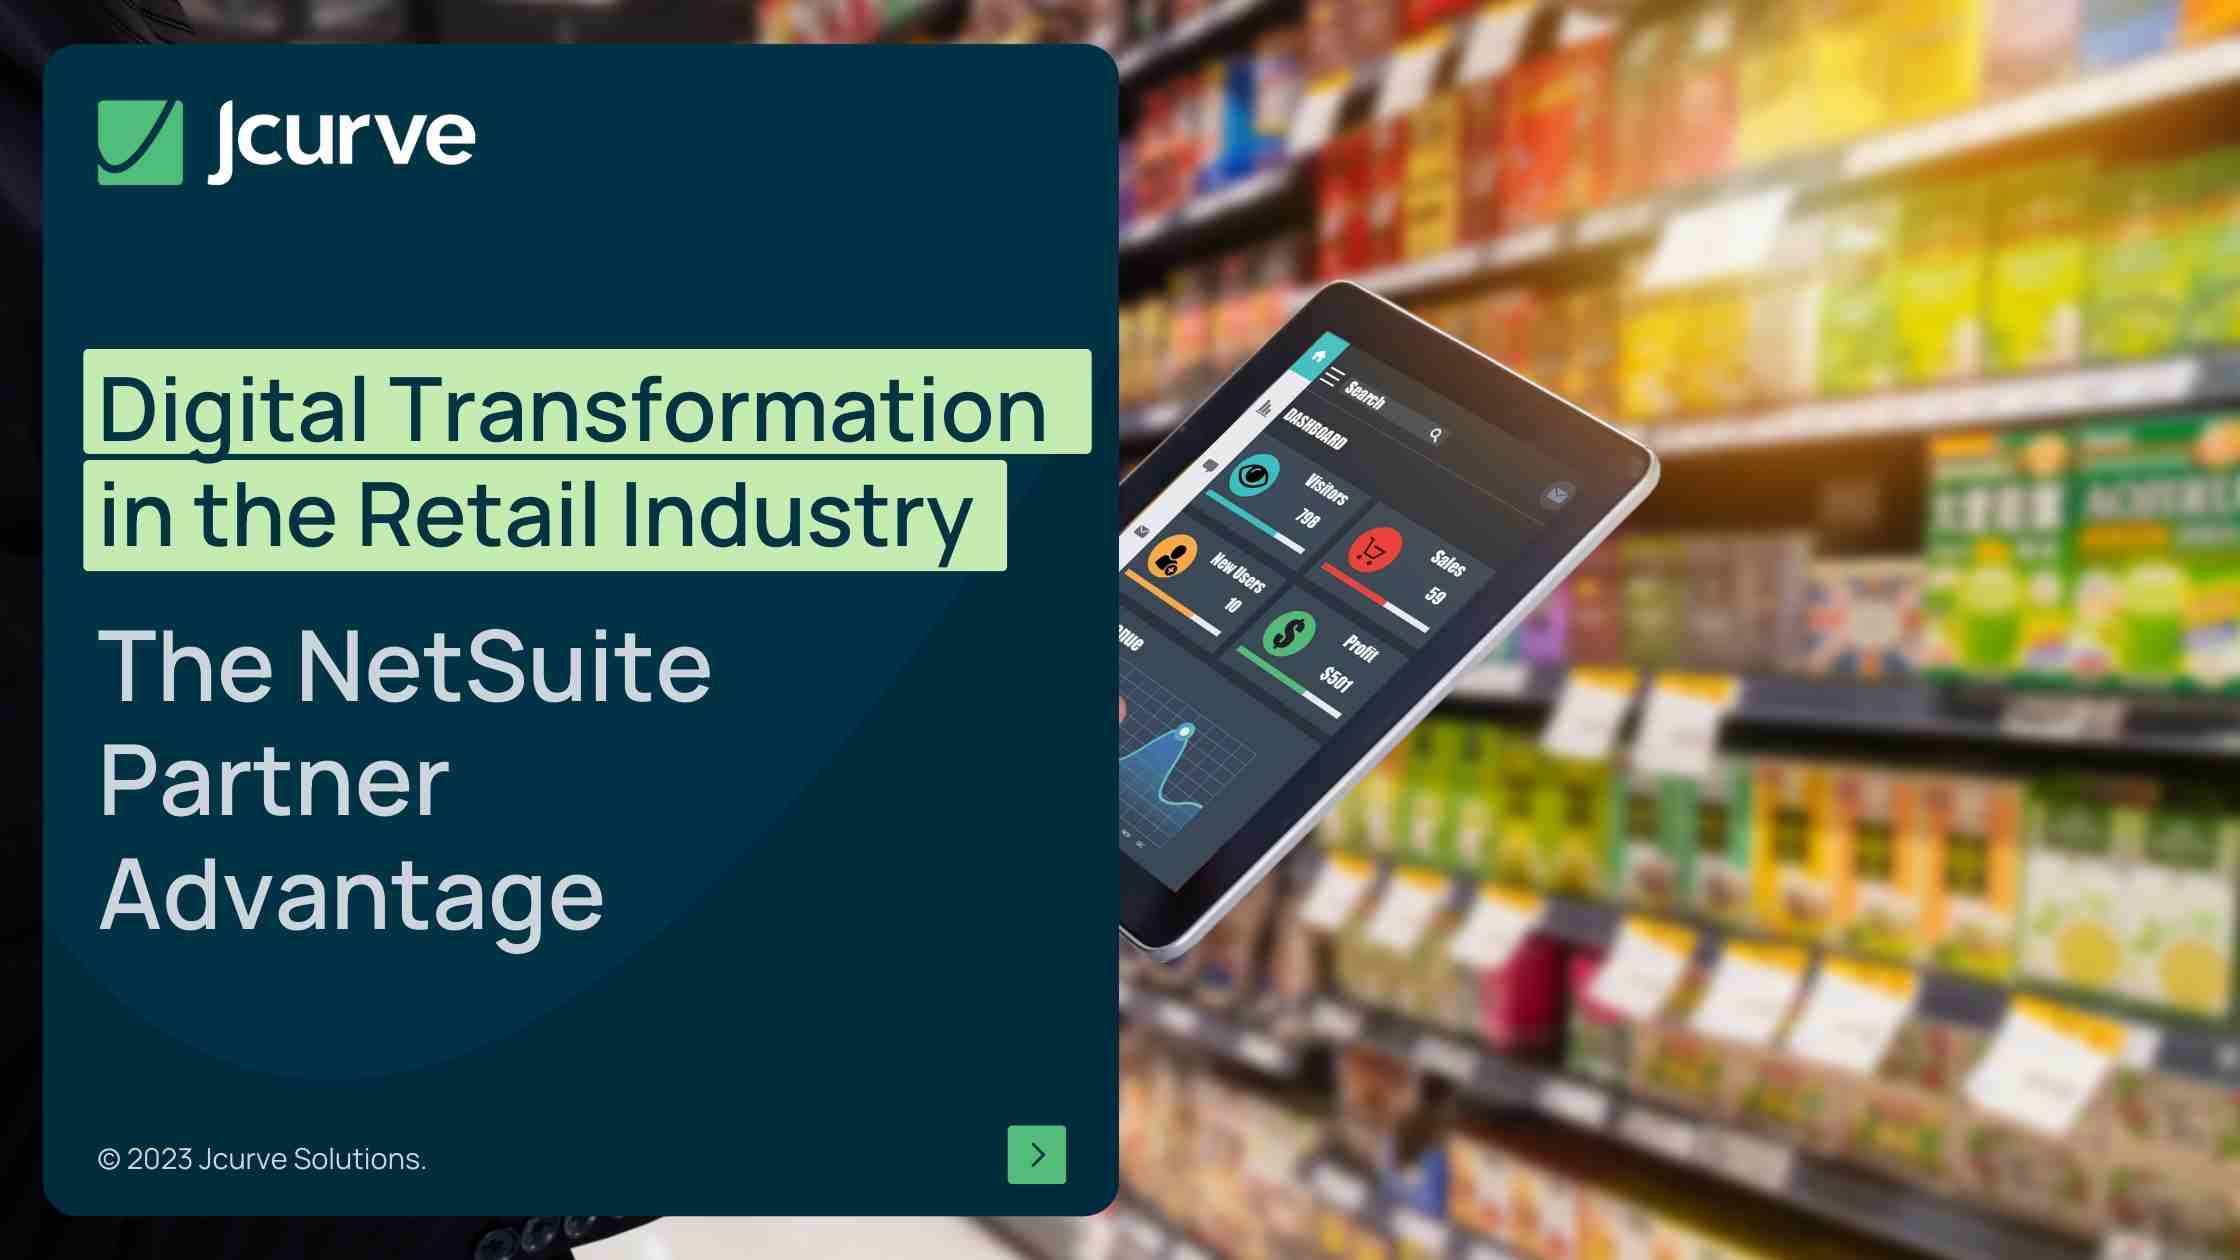 พาร์ทเนอร์ NetSuite ช่วยสร้างจุดแข็งให้อุตสาหกรรมค้าปลีกได้อย่างไรในยุค Digital Transformation?